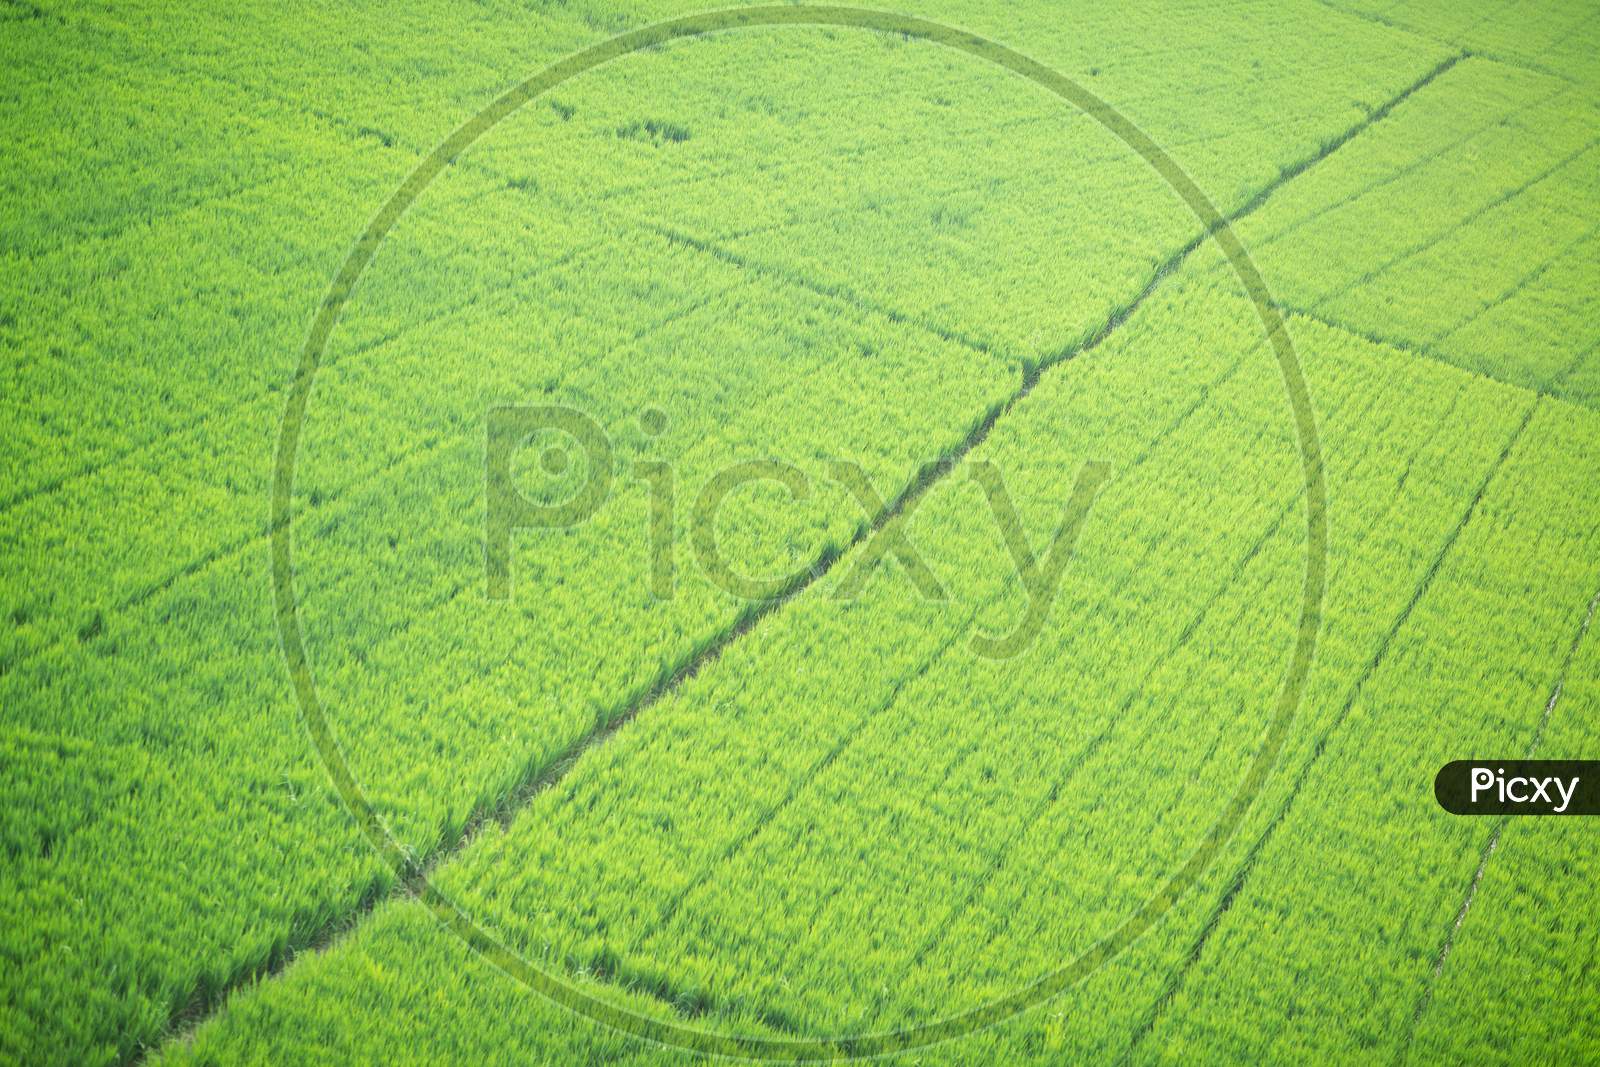 Green Paddy Fields In an Rural Village